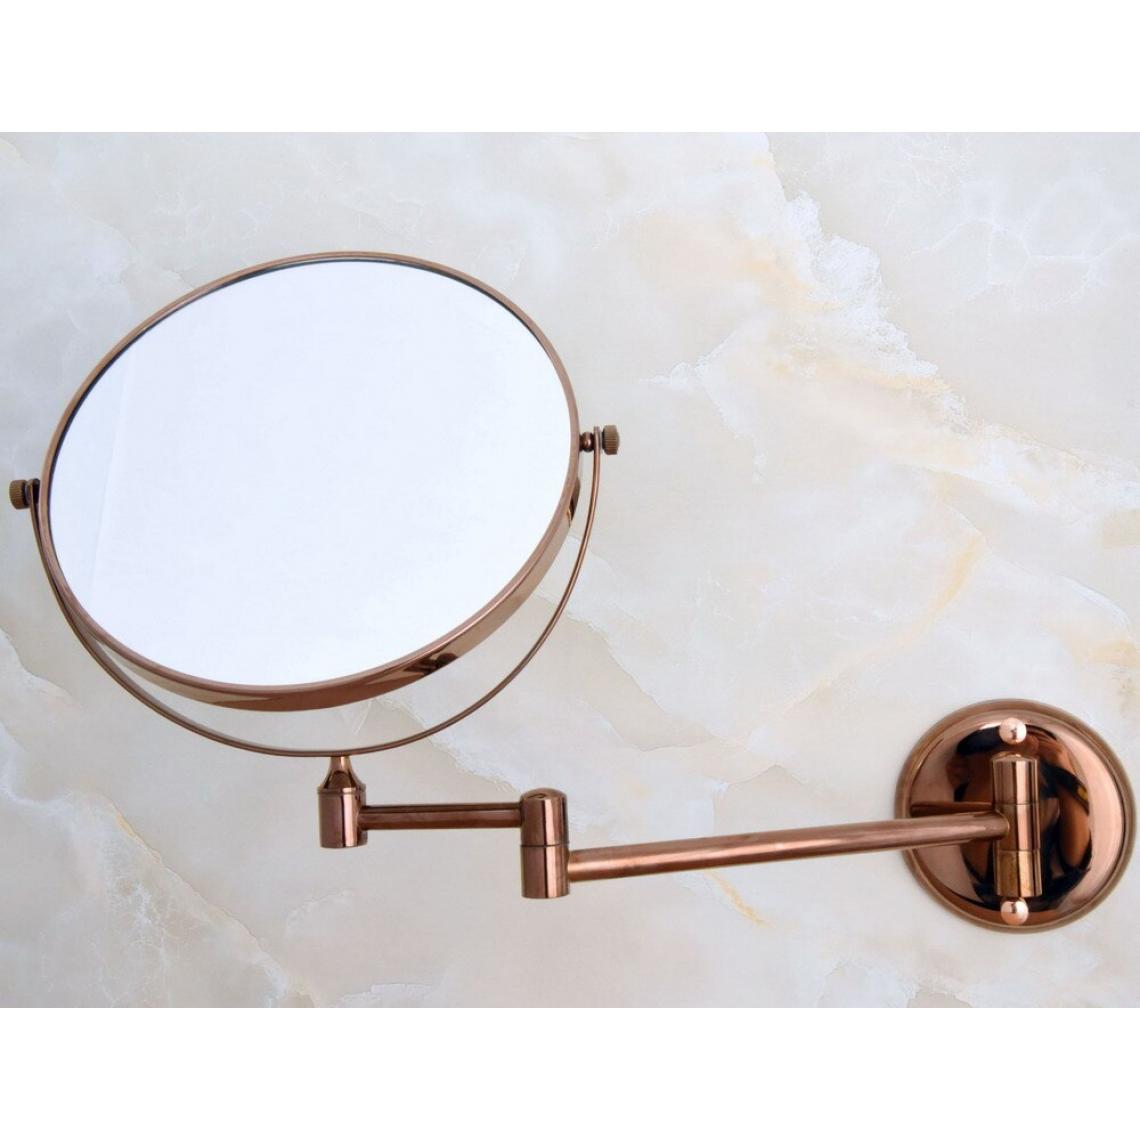 Universal - Bras pliés étendus rose doré cuivre mur loupe miroir miroir cosmétique madame miroir(Or) - Miroir de salle de bain